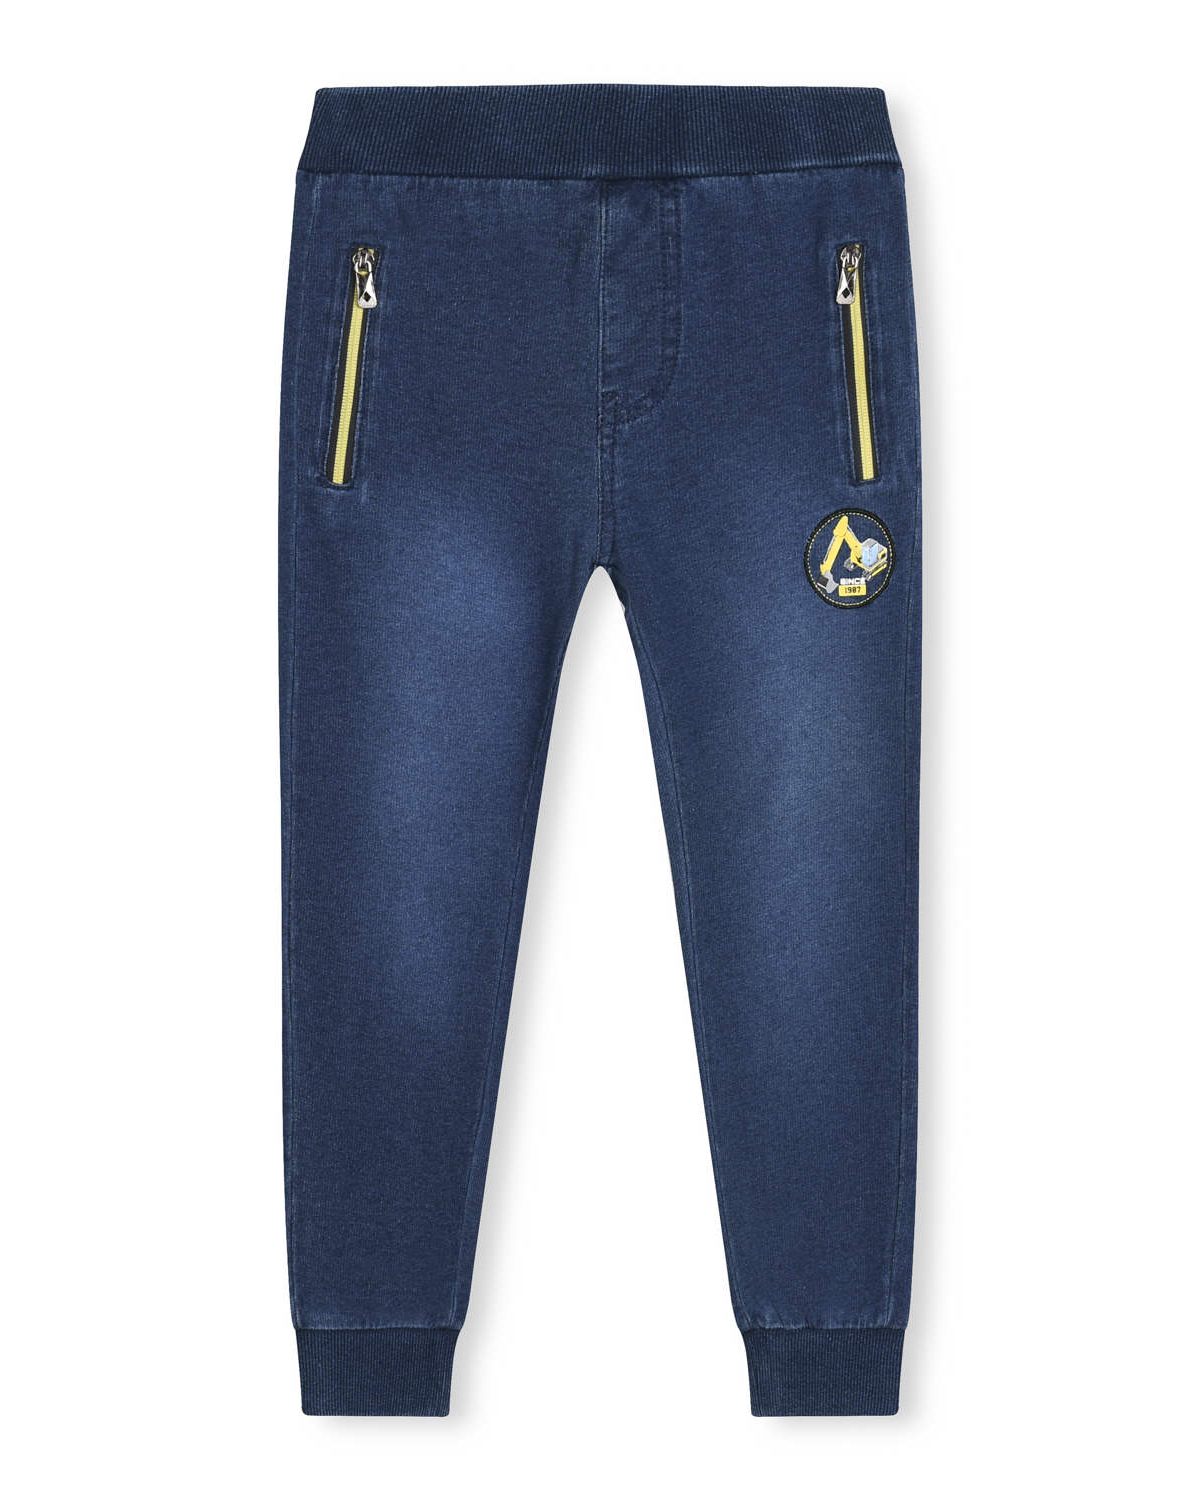 Chlapecké riflové kalhoty / tepláky - KUGO TM8259K, tmavší modrá / žluté zipy Barva: Modrá, Velikost: 110